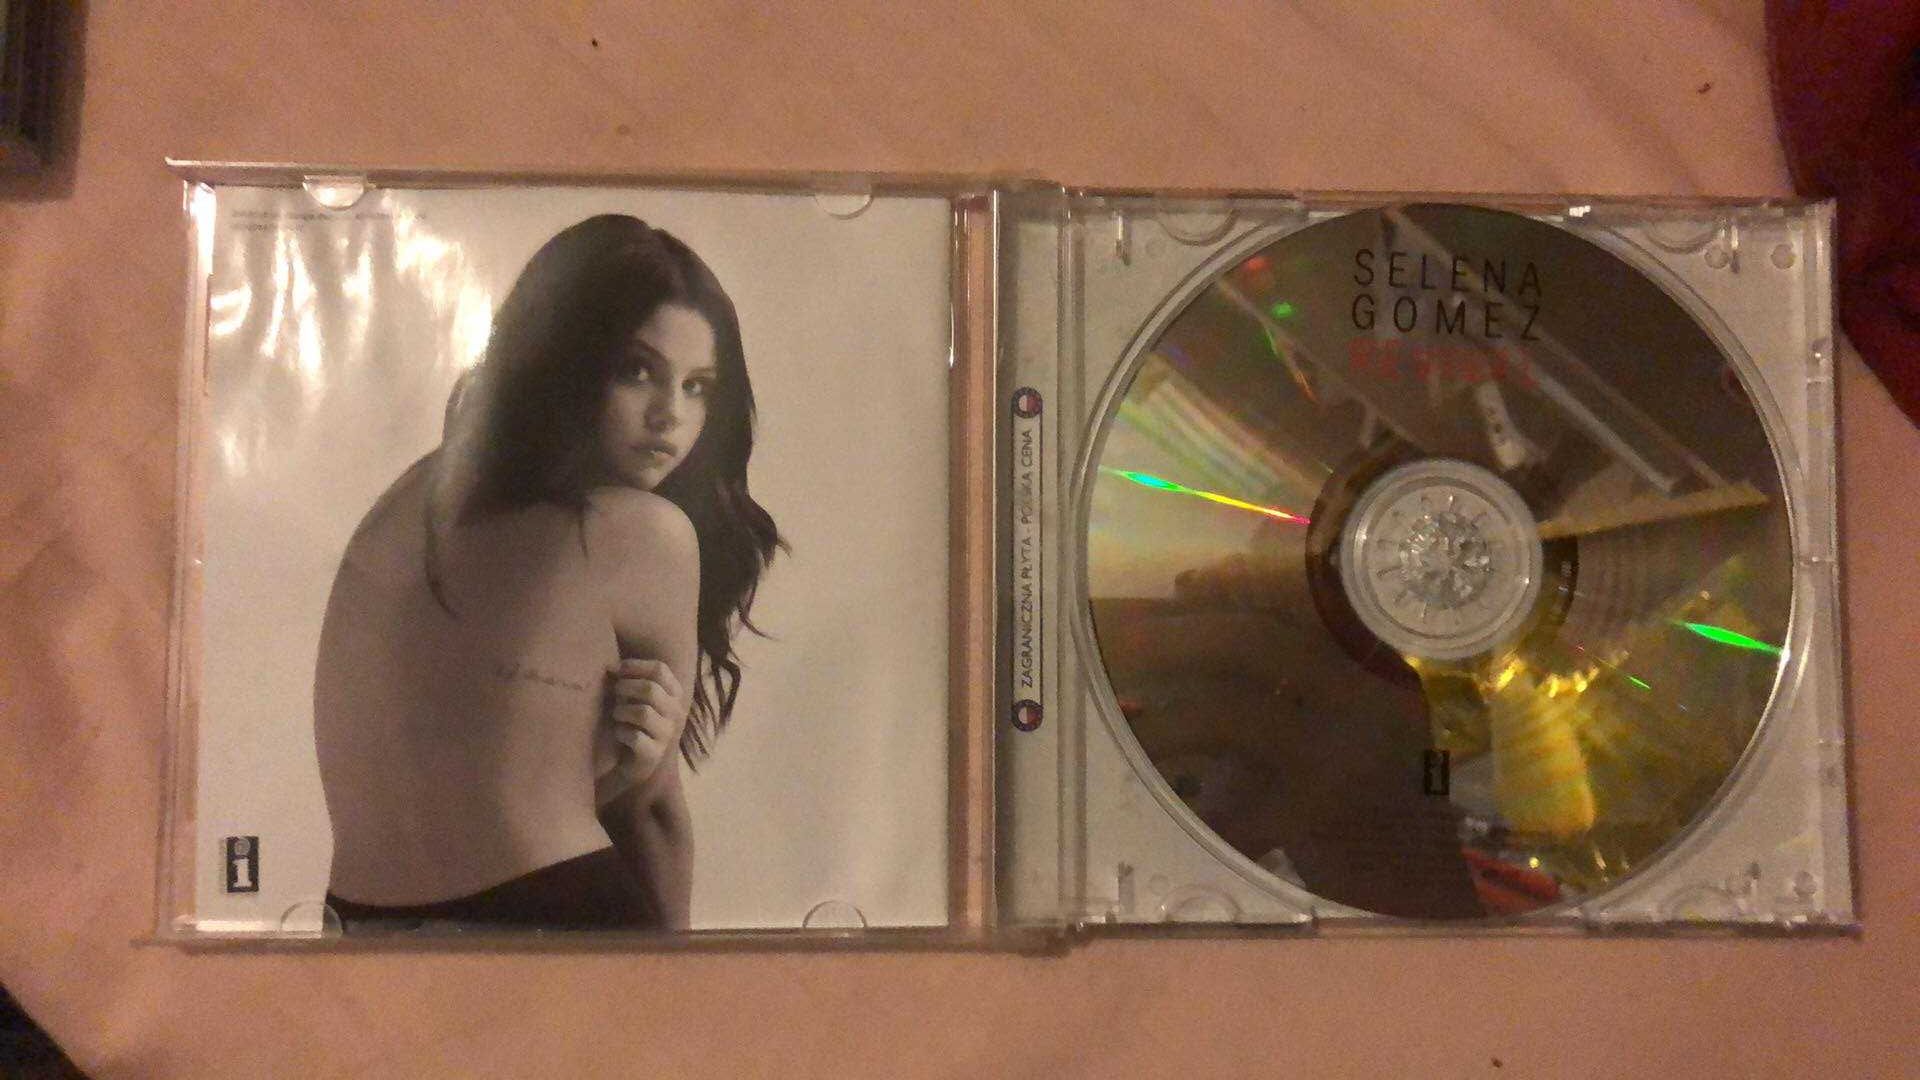 Selena Gomez-Revival CD